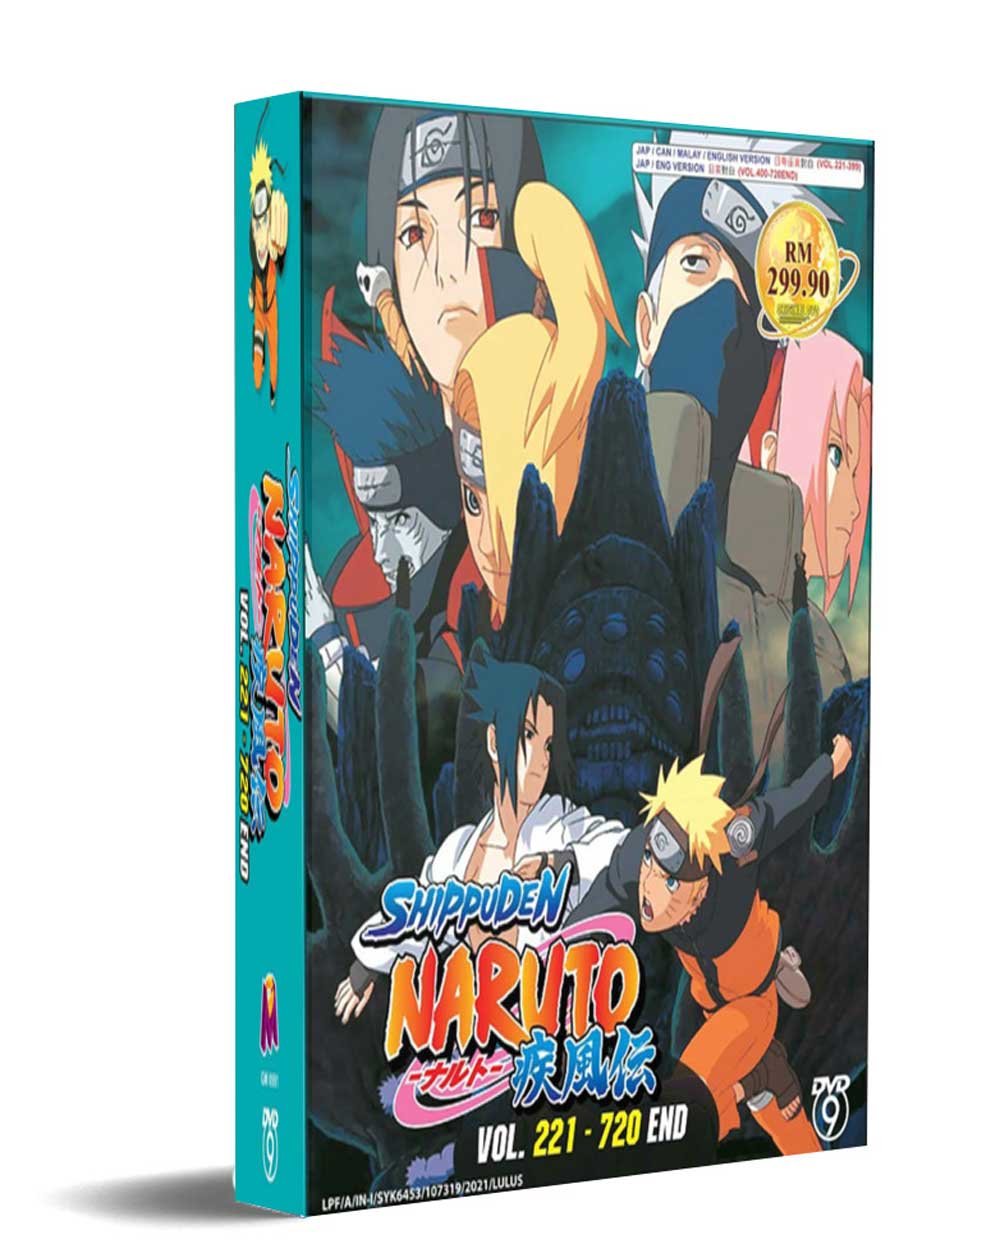 NARUTO TV 221-720 (DVD) (2002-2007) Anime